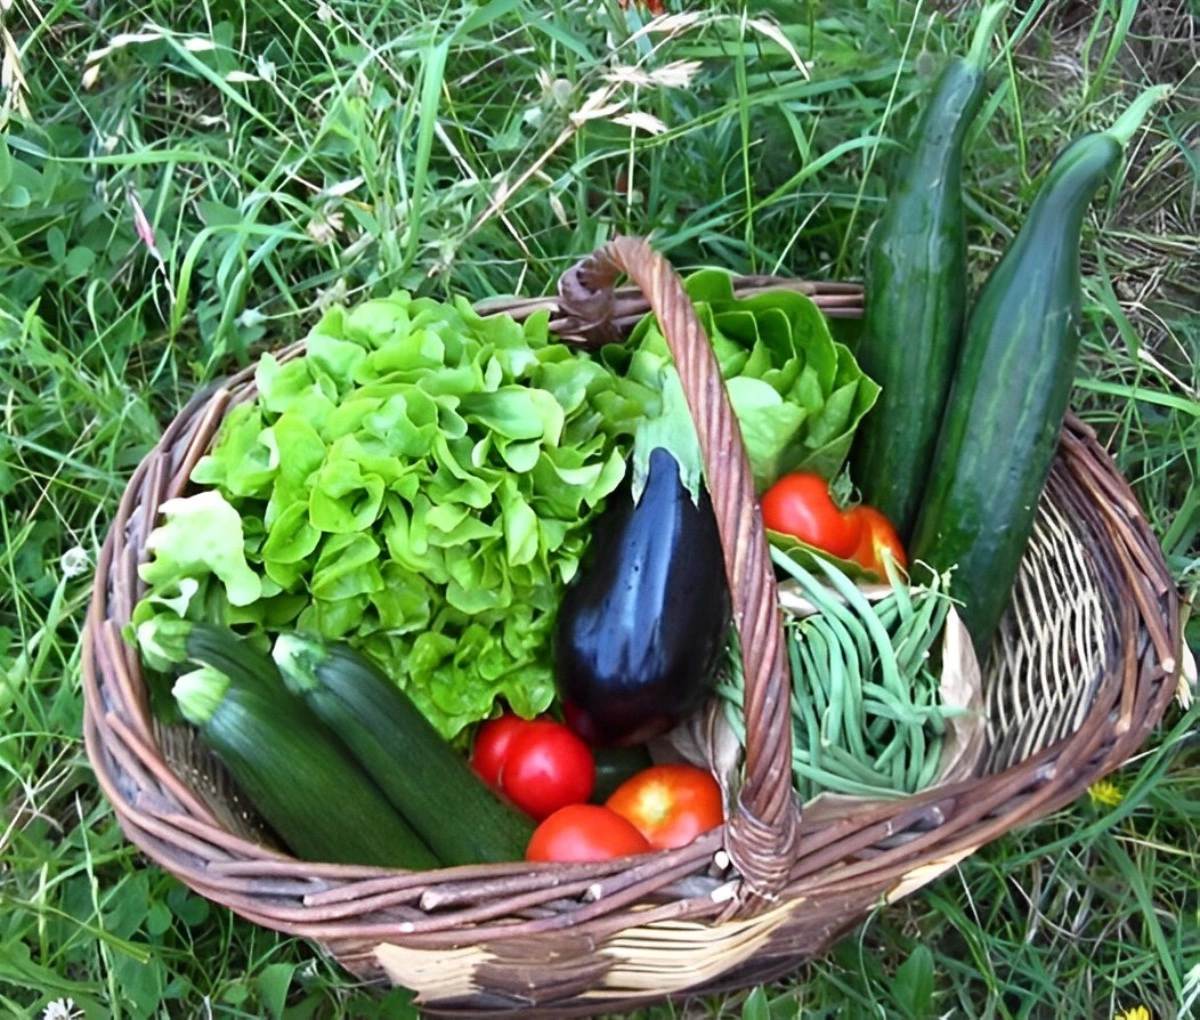 panier de legumes pose au sol avec deux salades deux concombres une aubergine des haricots verts trois courgettes et des tomates rouges